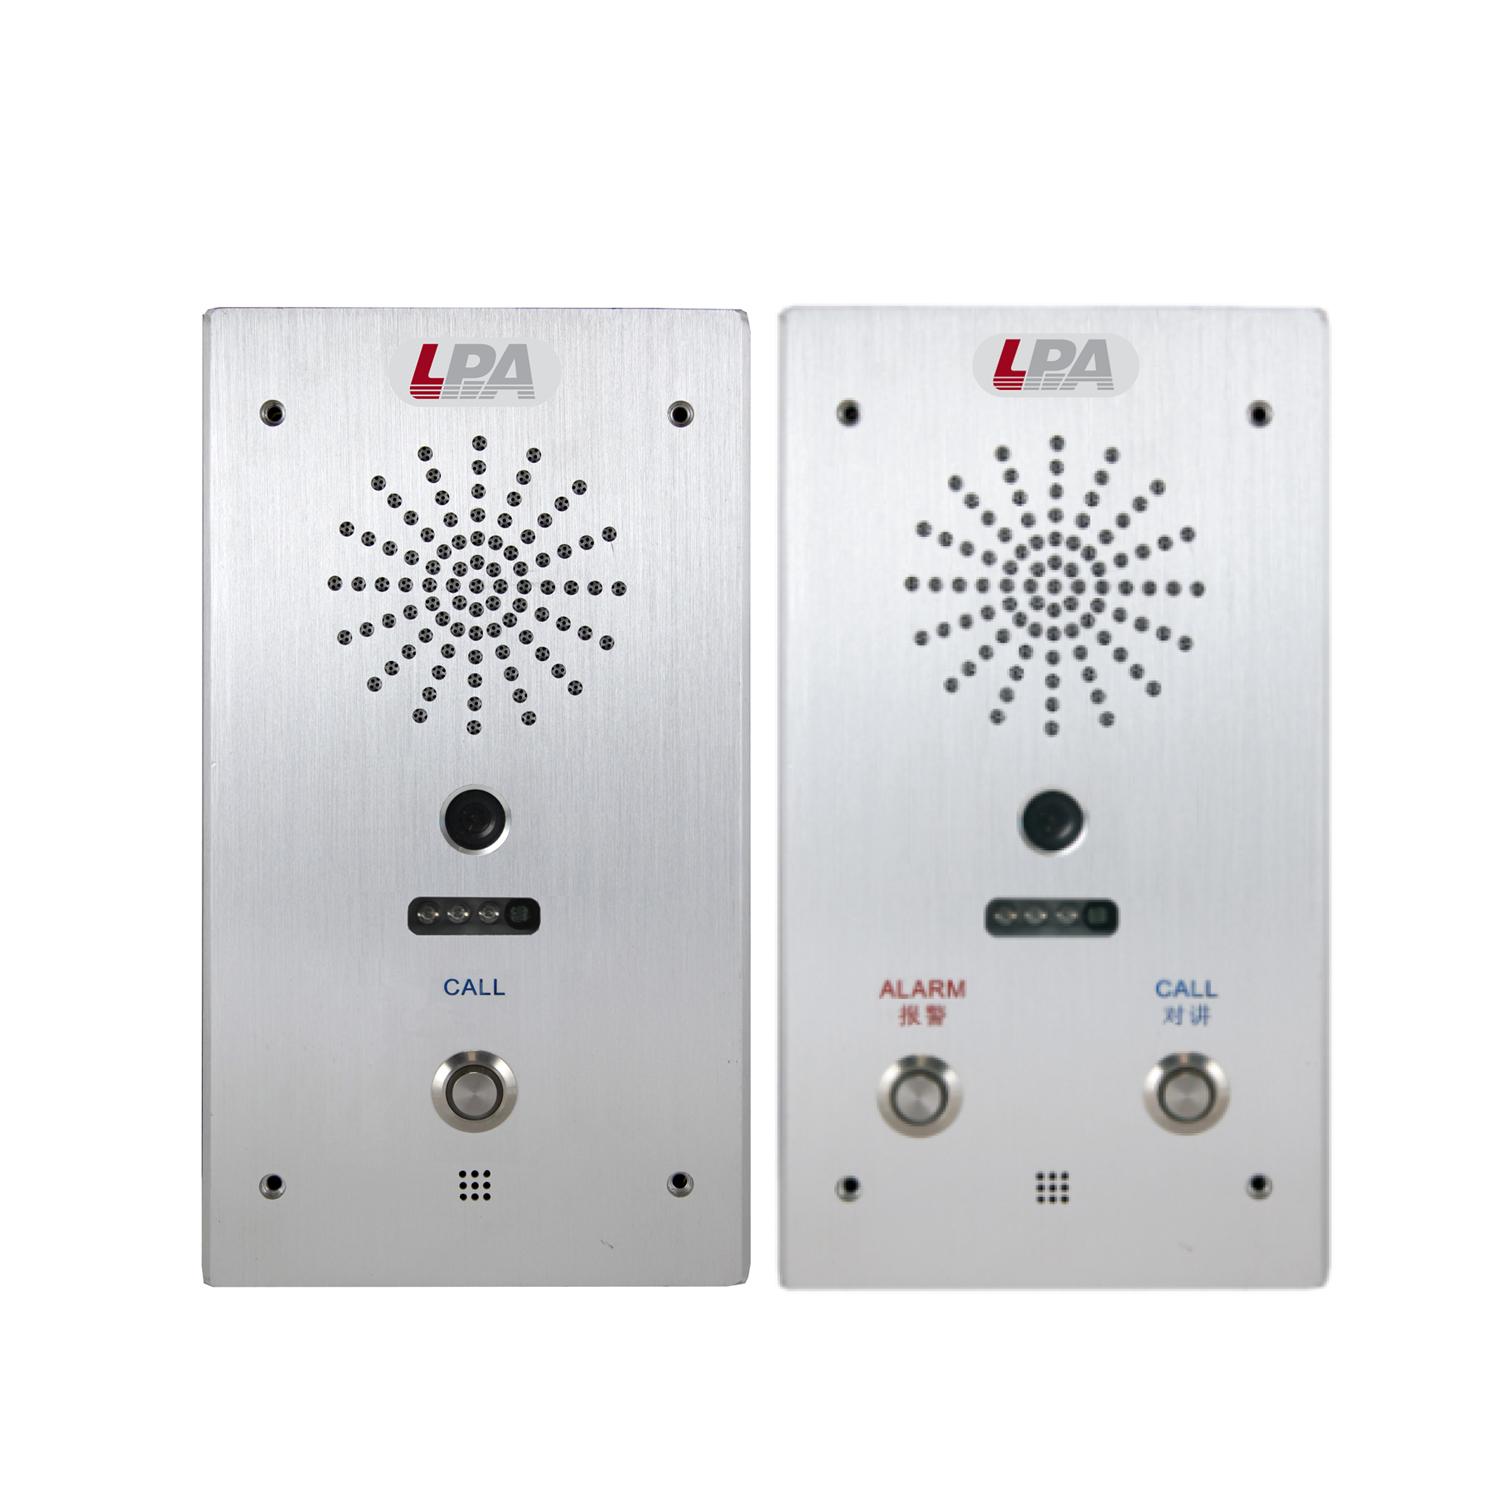 Lpa duo mic. Вызывная панель LPA-Duplex-2. LPA-Duplex-1. LPA-Duplex-2 вызывная панель системы обратной связи. Вызывная панель LPA-3086bvncs.